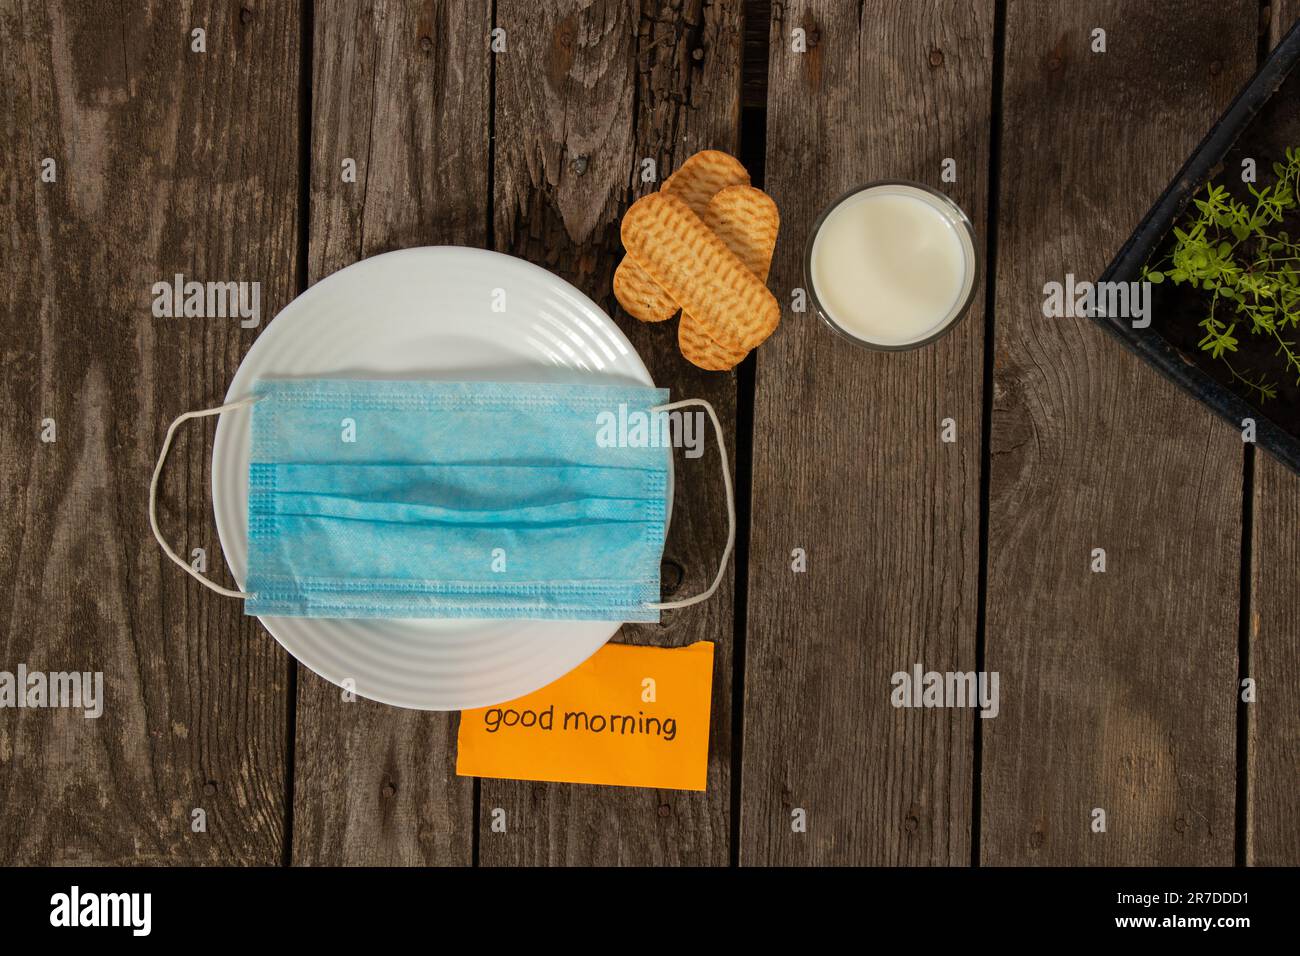 le masque médical se trouve sur une assiette blanche avec du lait et des biscuits sur la table et à côté des mots bonjour Banque D'Images